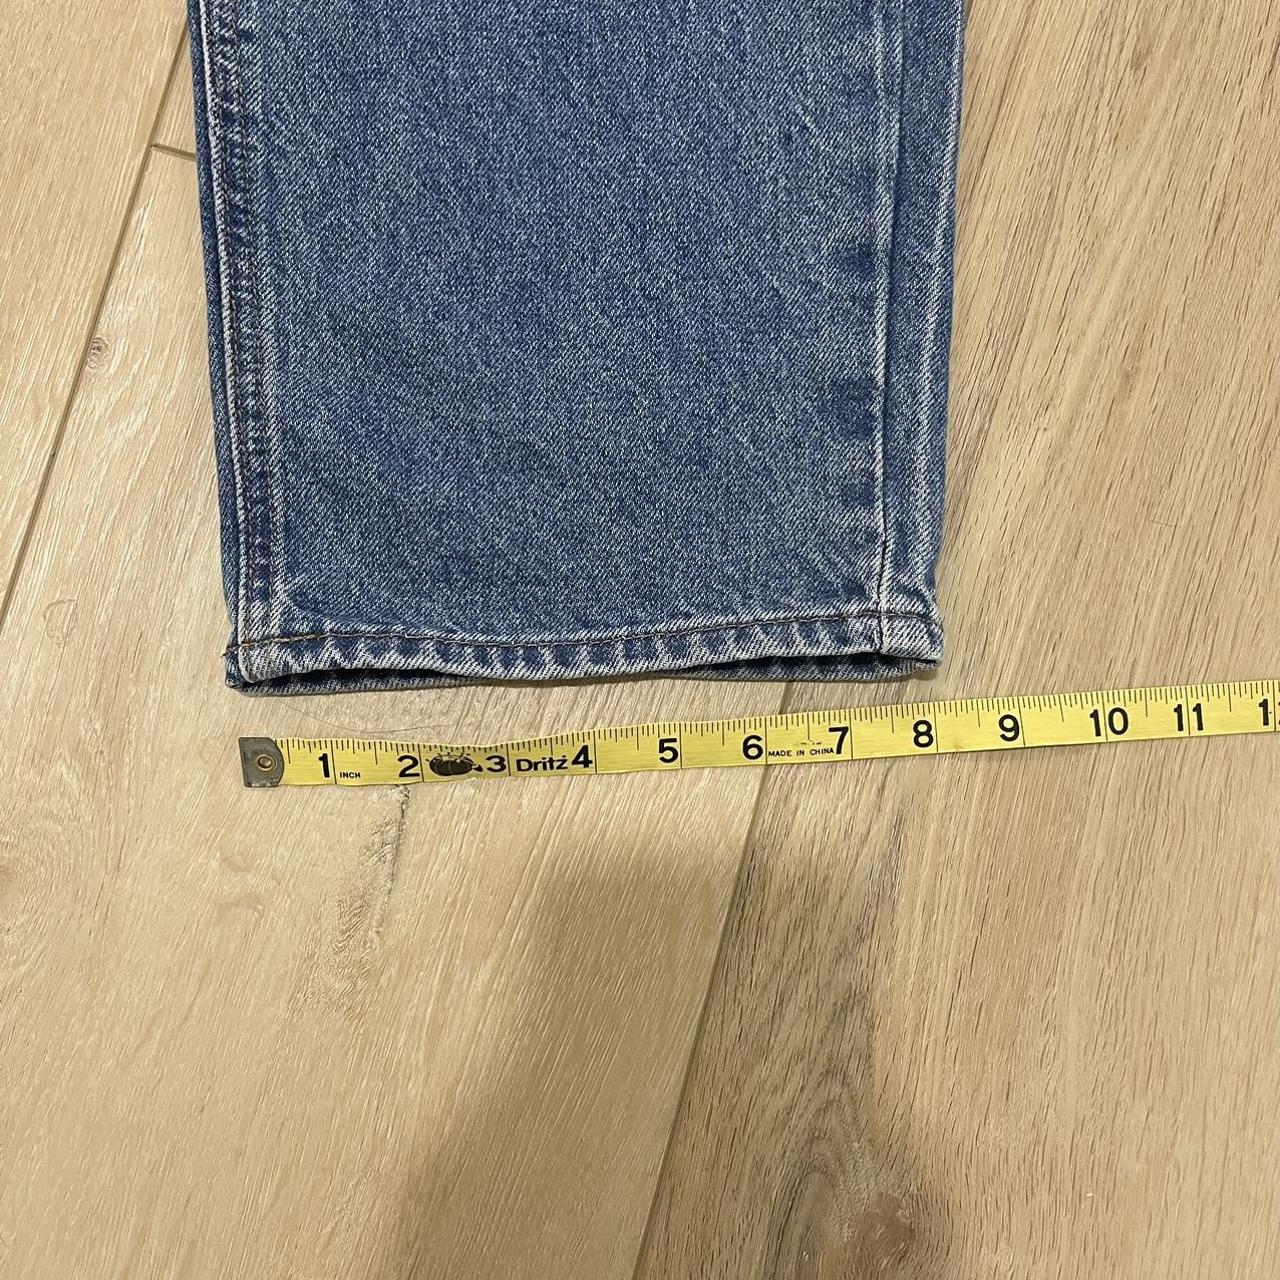 Blue Empyre jeans size 30. Measurements... - Depop